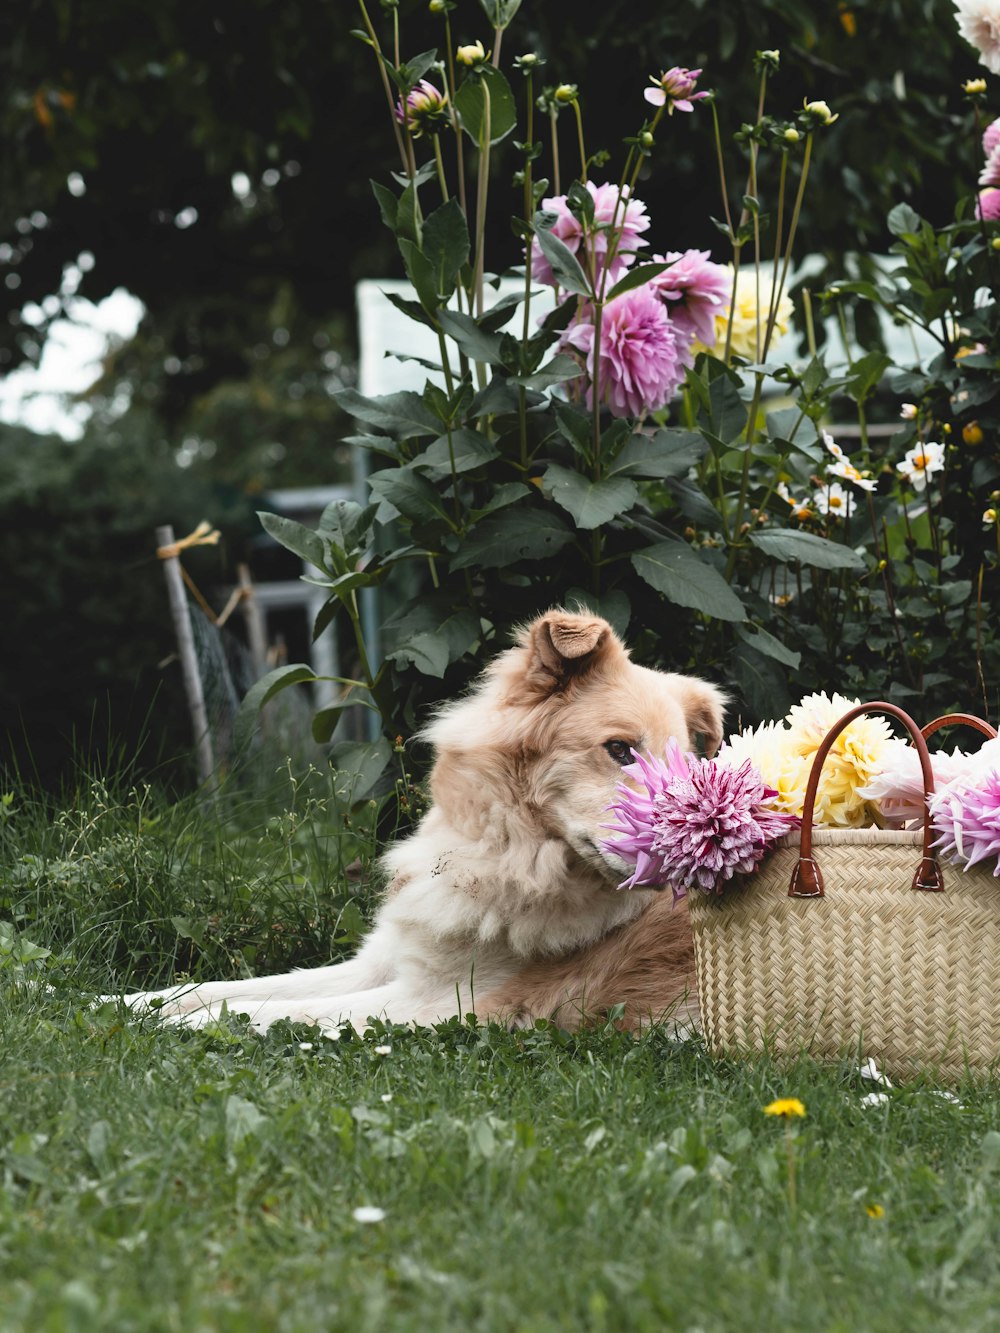 꽃 바구니를 들고 풀밭에 앉아 있는 개